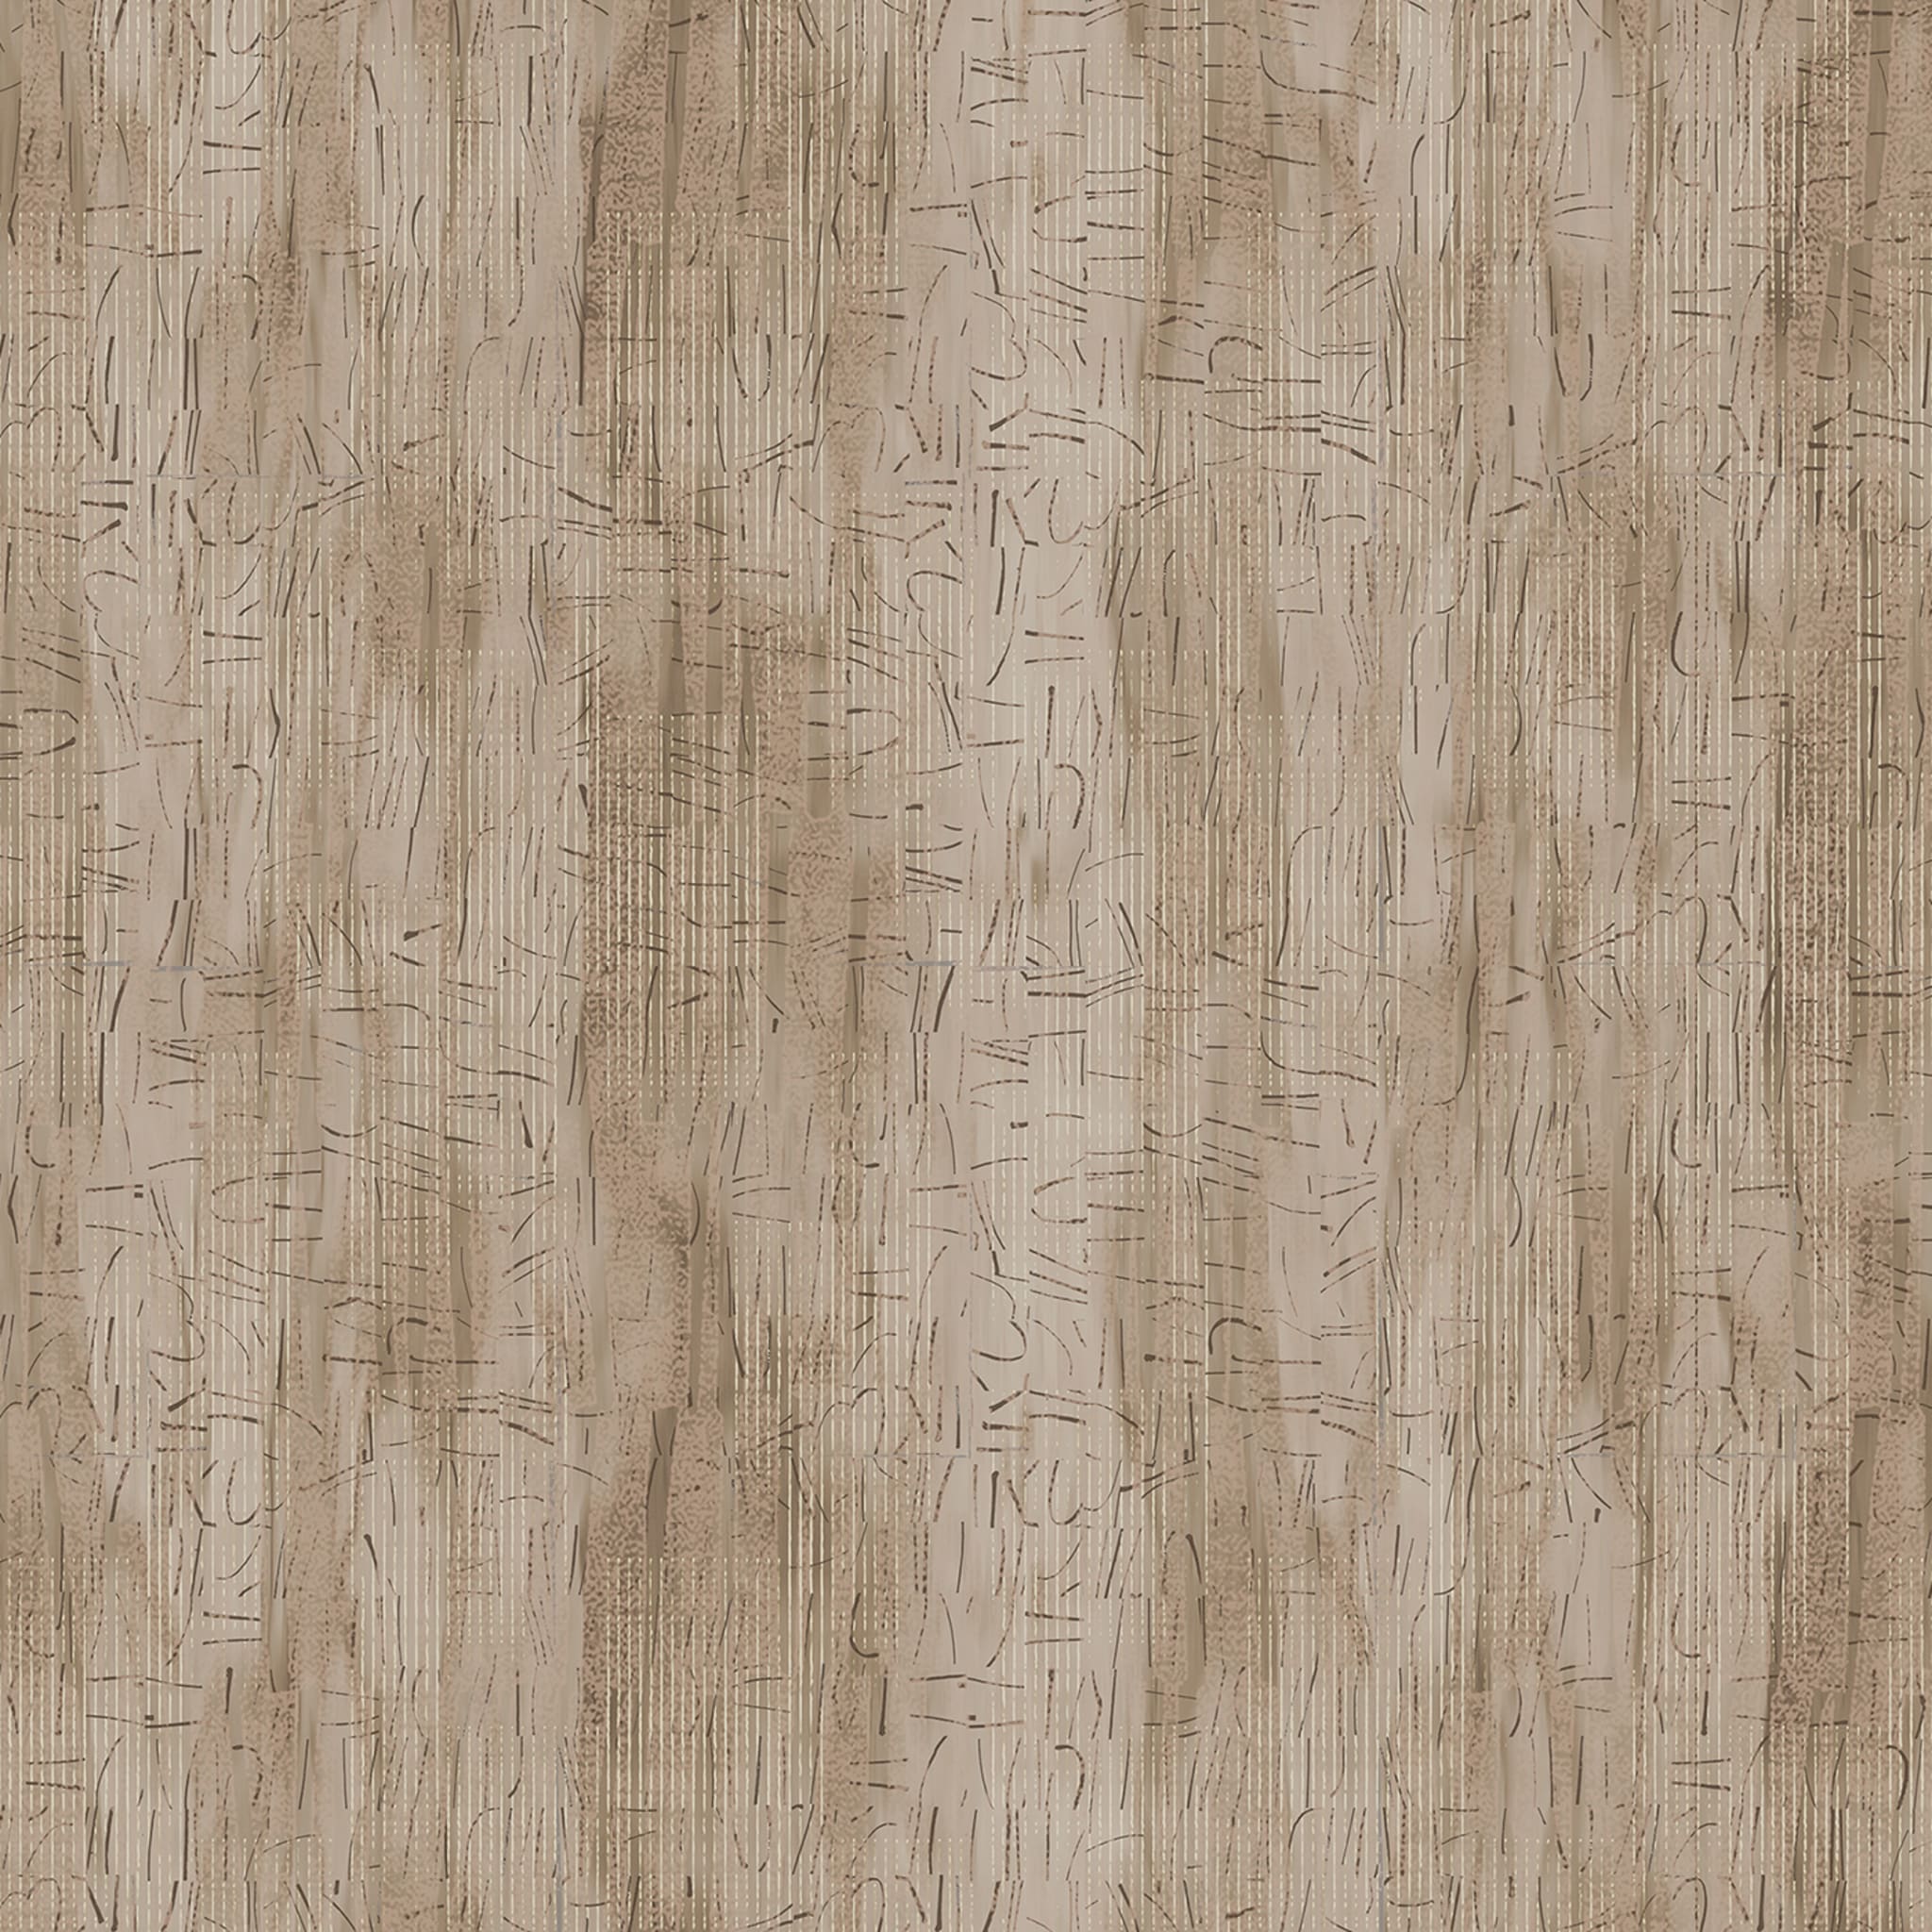 Corteccia Wallpaper by THDP #2 - Alternative view 1